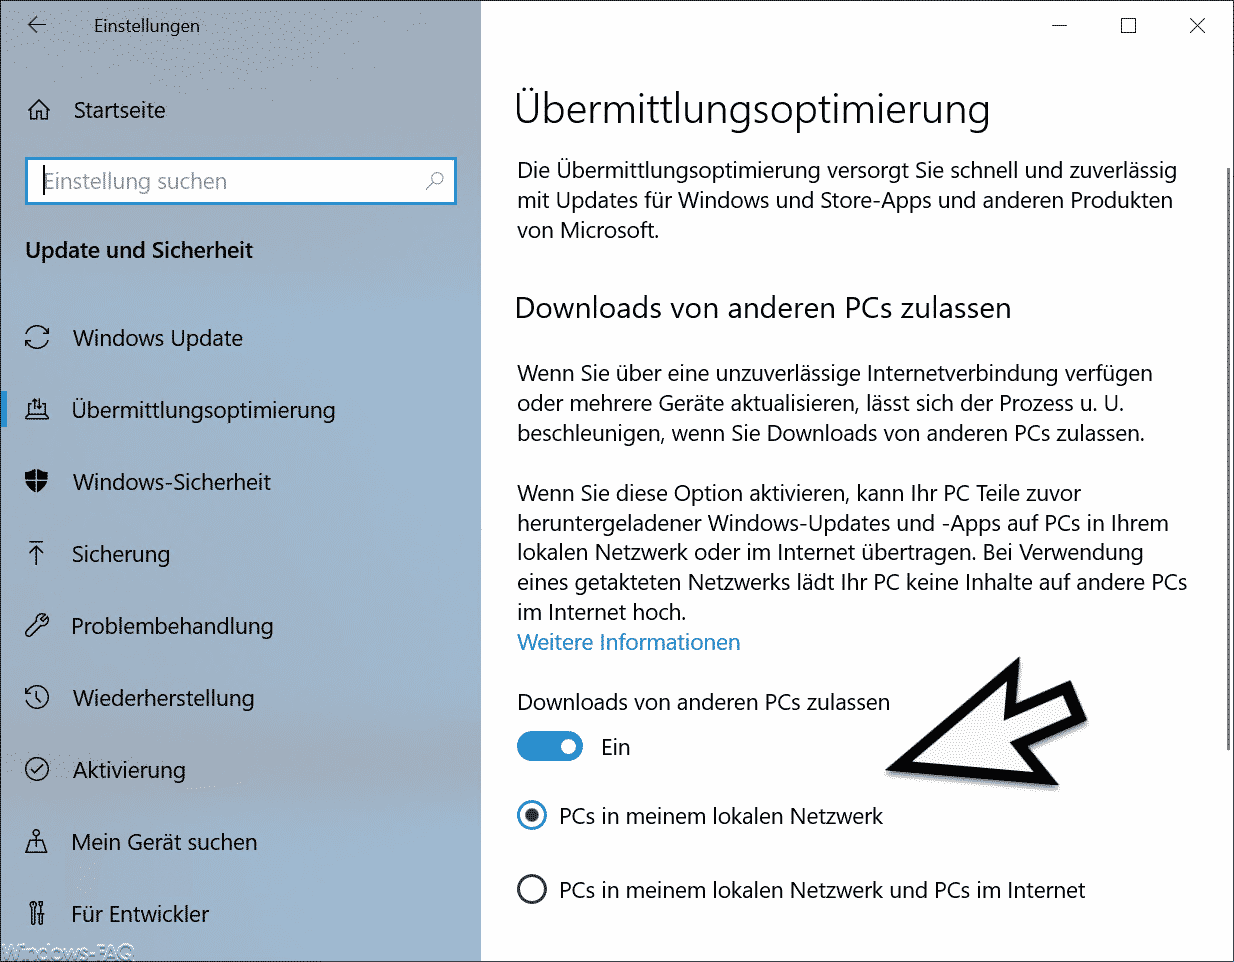 Windows 10 Updates und Downloads von anderen PCs im Netzwerk zulassen